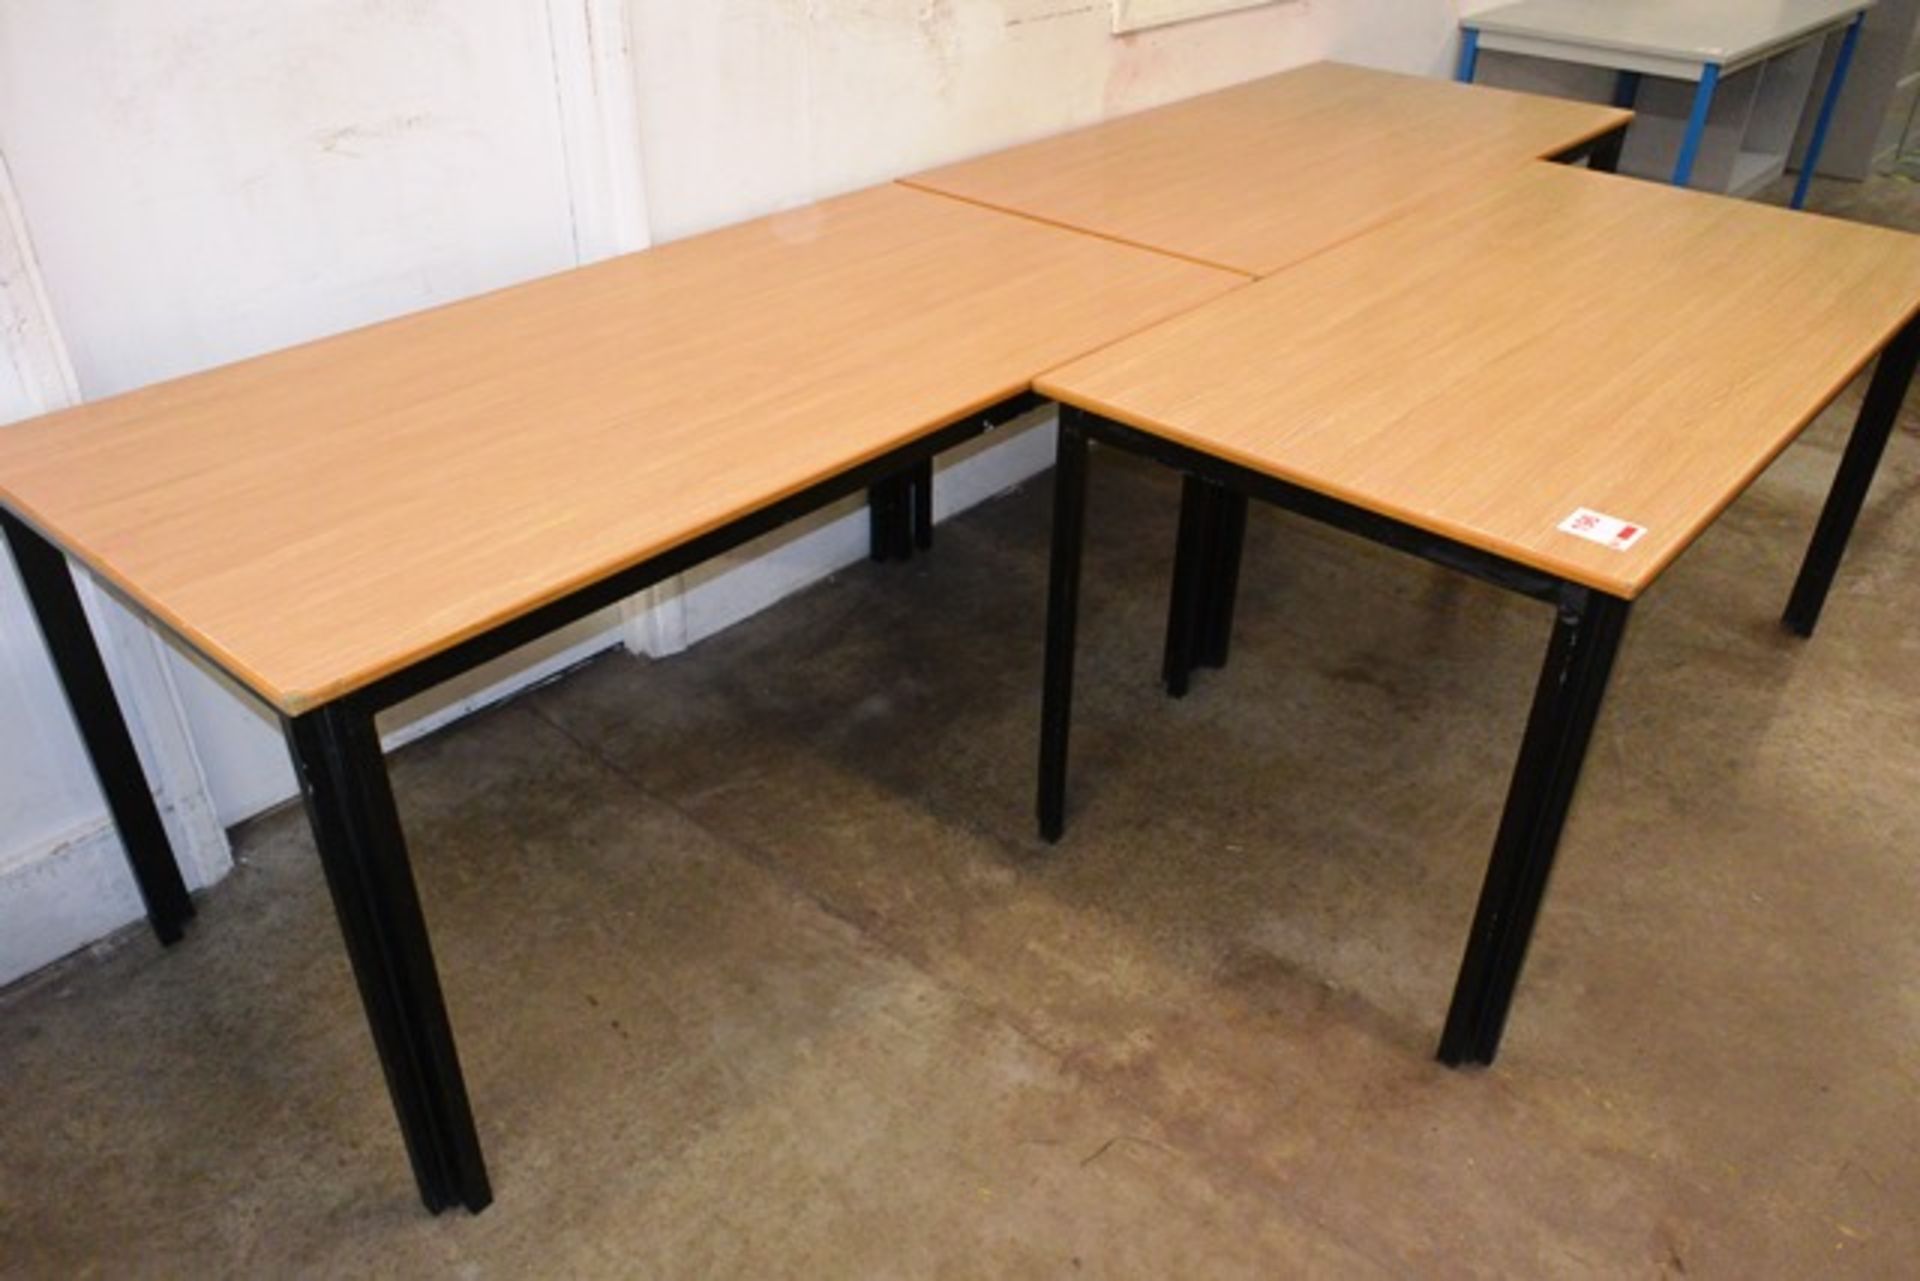 Three light oak effect rectangular tables, approx 1500 x 750mm